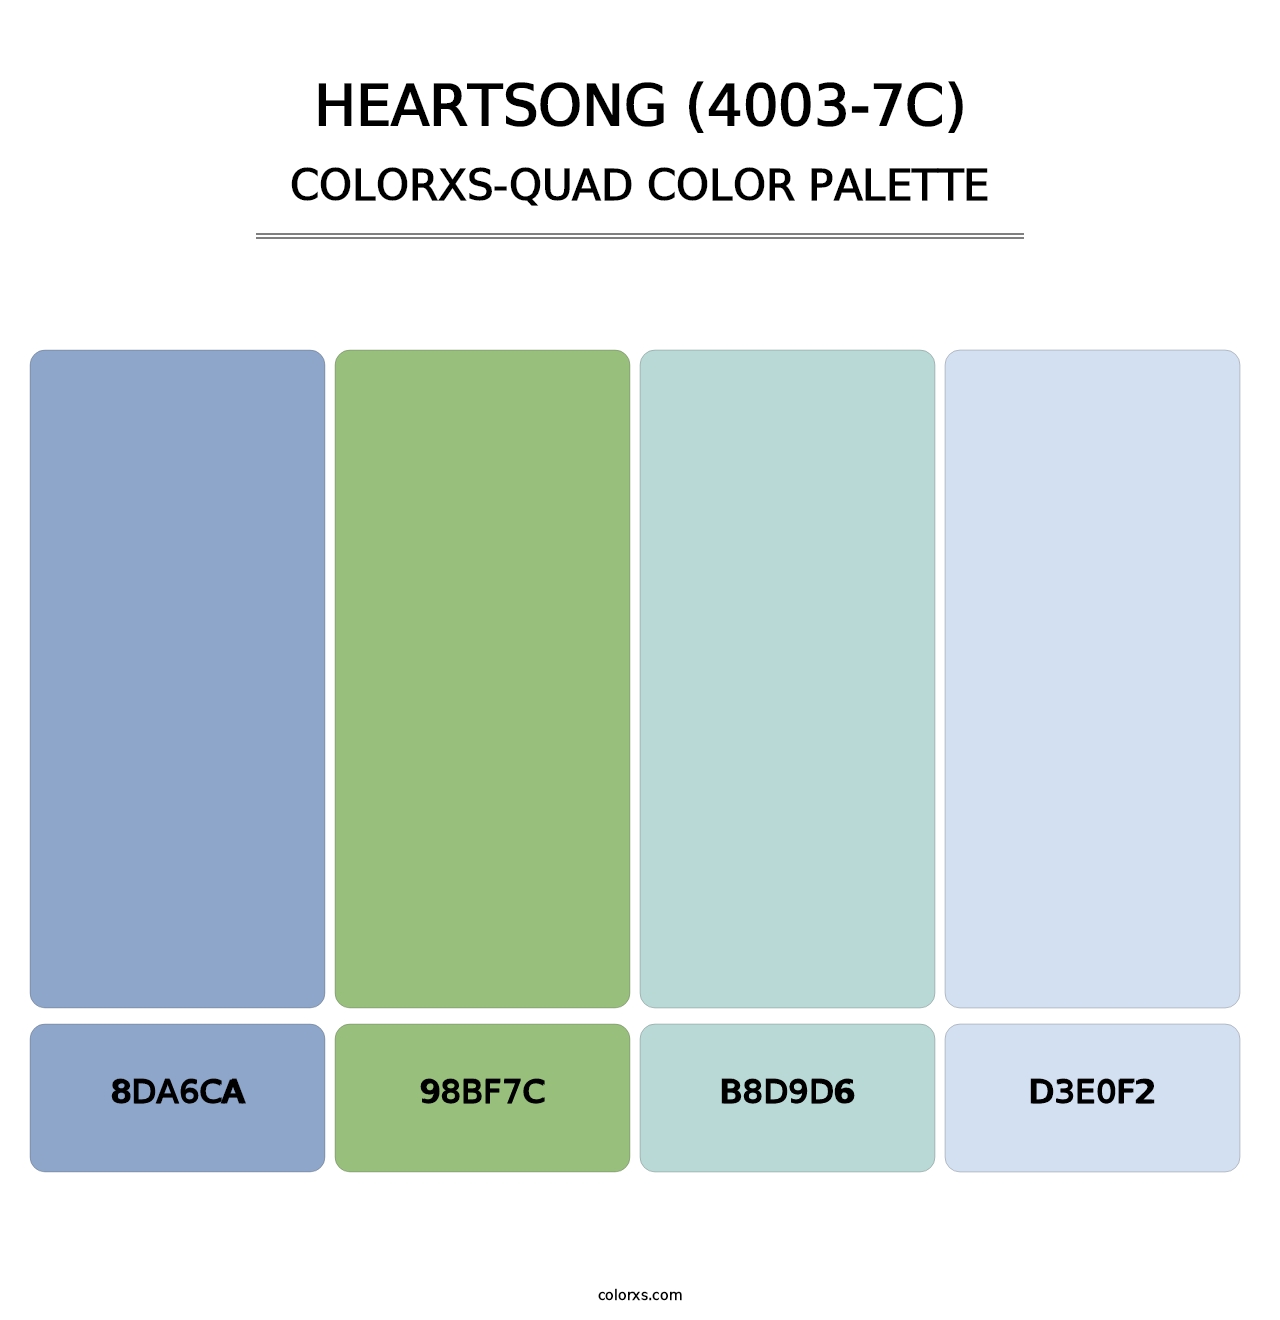 Heartsong (4003-7C) - Colorxs Quad Palette